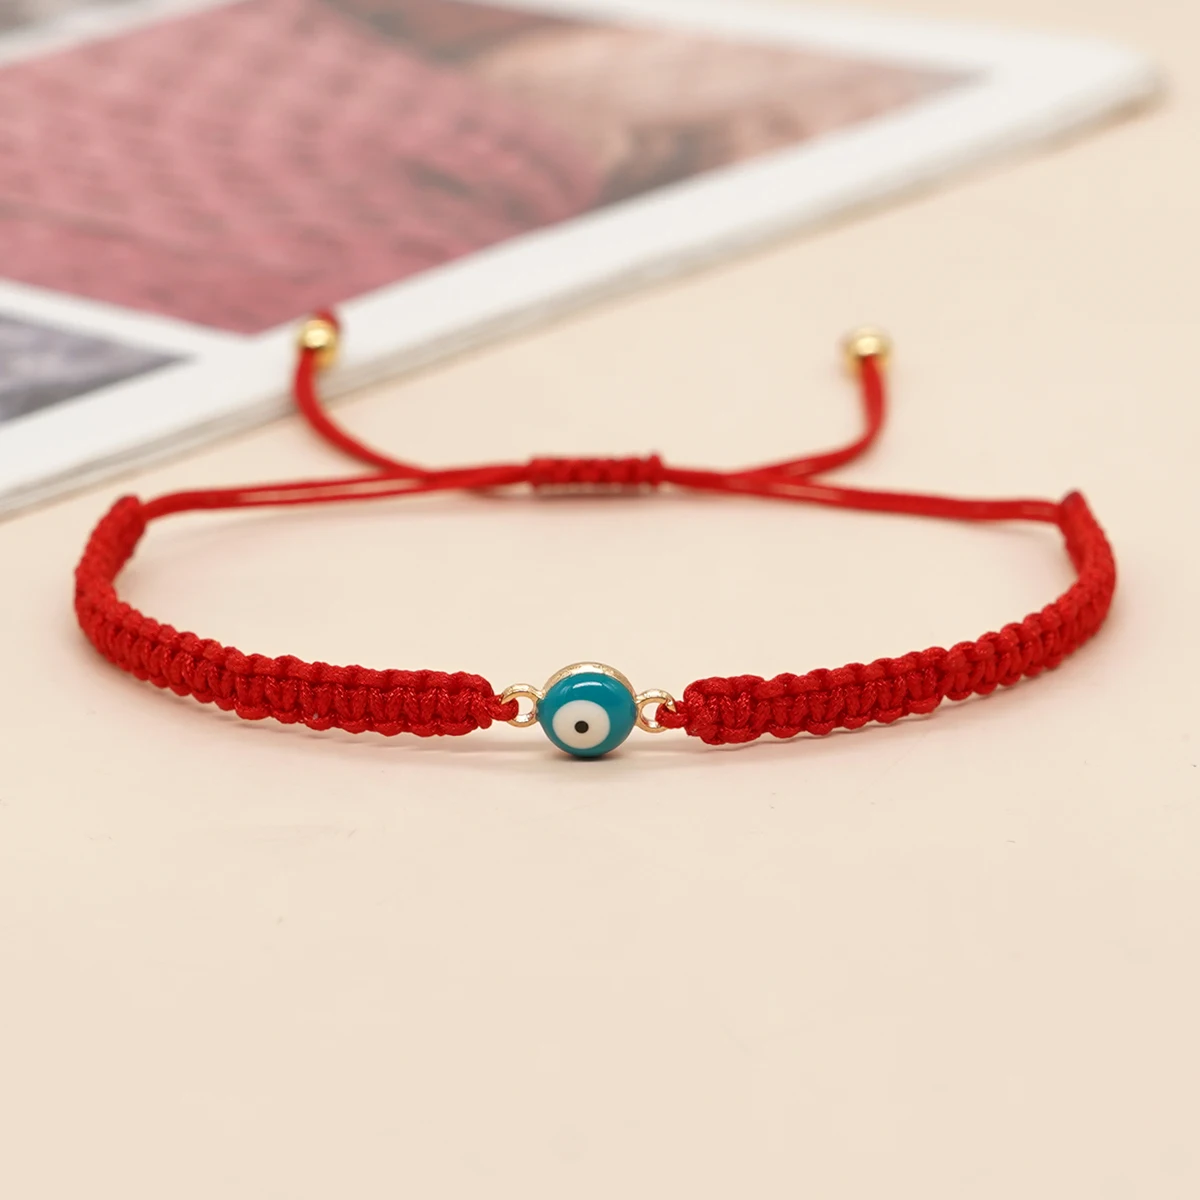 

Red Rope Lucky Braided Bracelet Evil Eye Friendship Charm Bracelets Handmade Jewelry Gift for Women Teen Girl Summer Pulsera